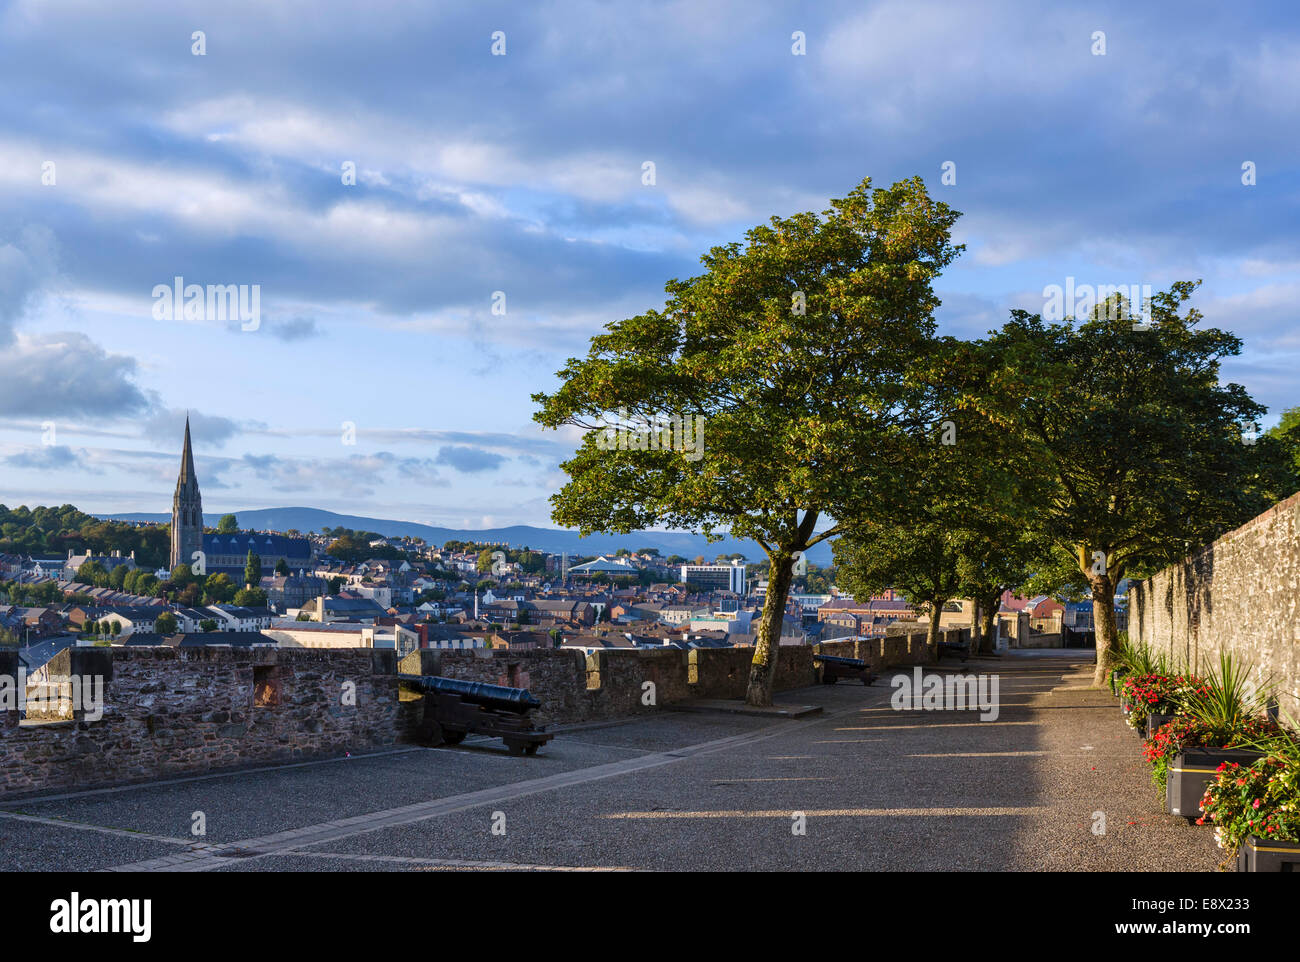 Alte Stadtmauer in den frühen Abendstunden mit St Eugene Kathedrale in der Ferne, Derry, County Londonderry, Nordirland, Vereinigtes Königreich Stockfoto